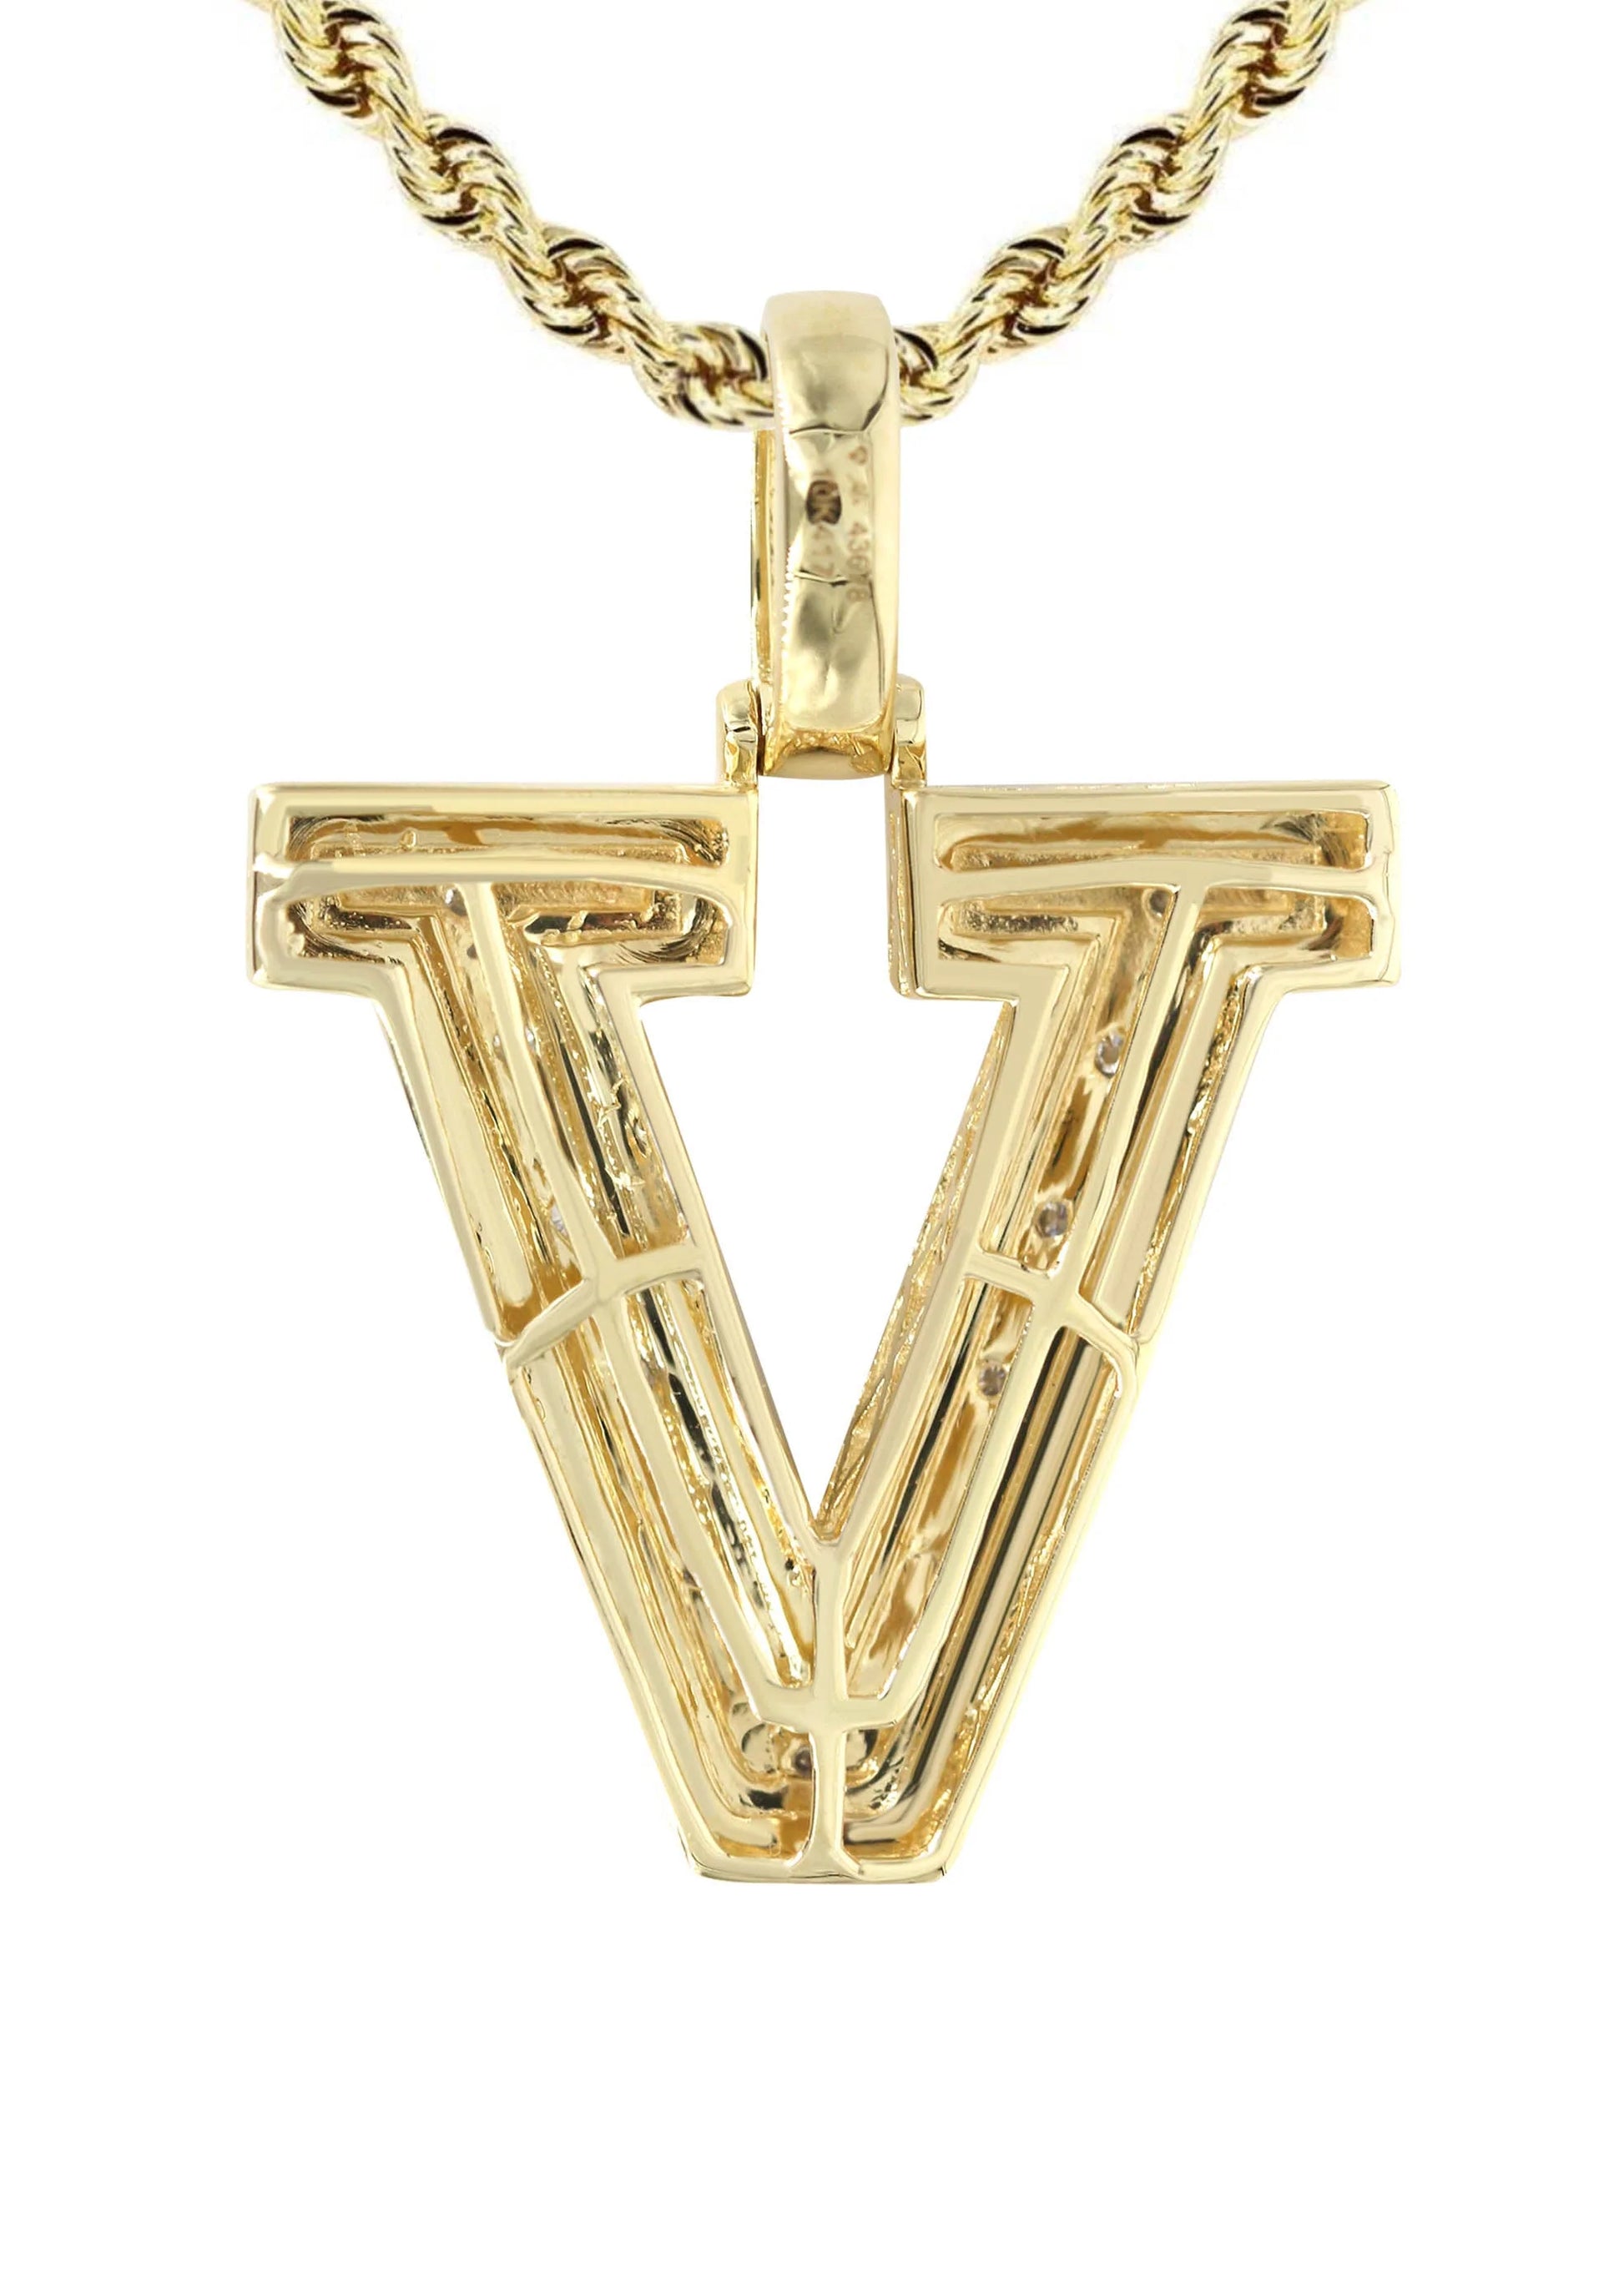 10k Yellow Gold Diamond Pendant Letter "V"